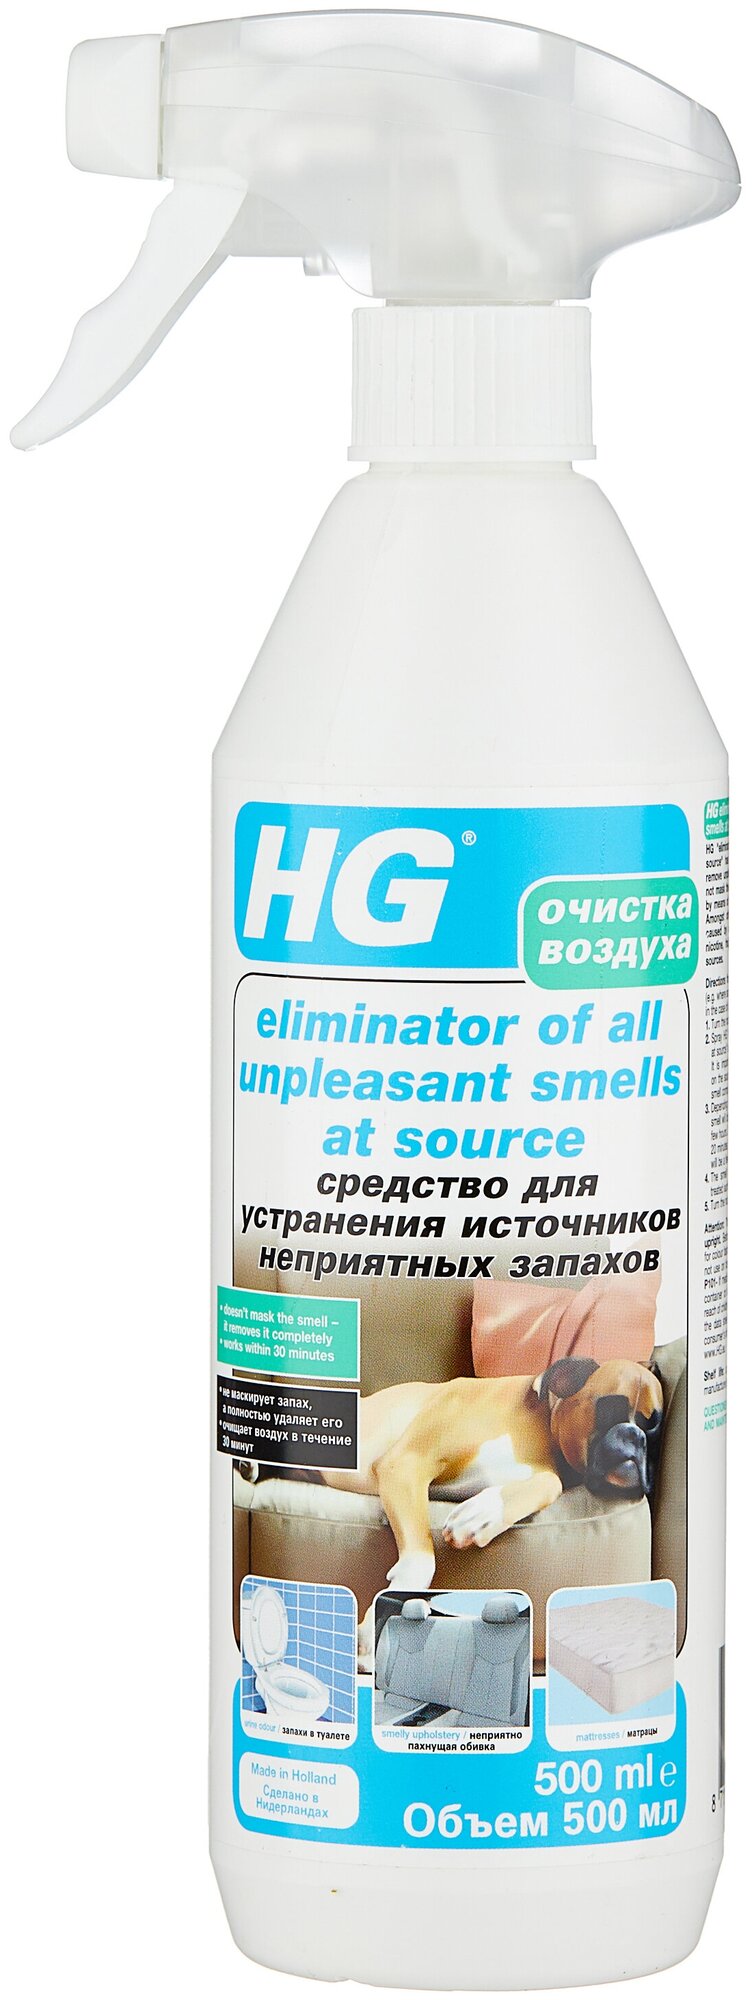 HG средство для устранения источников неприятных запахов, 500 мл